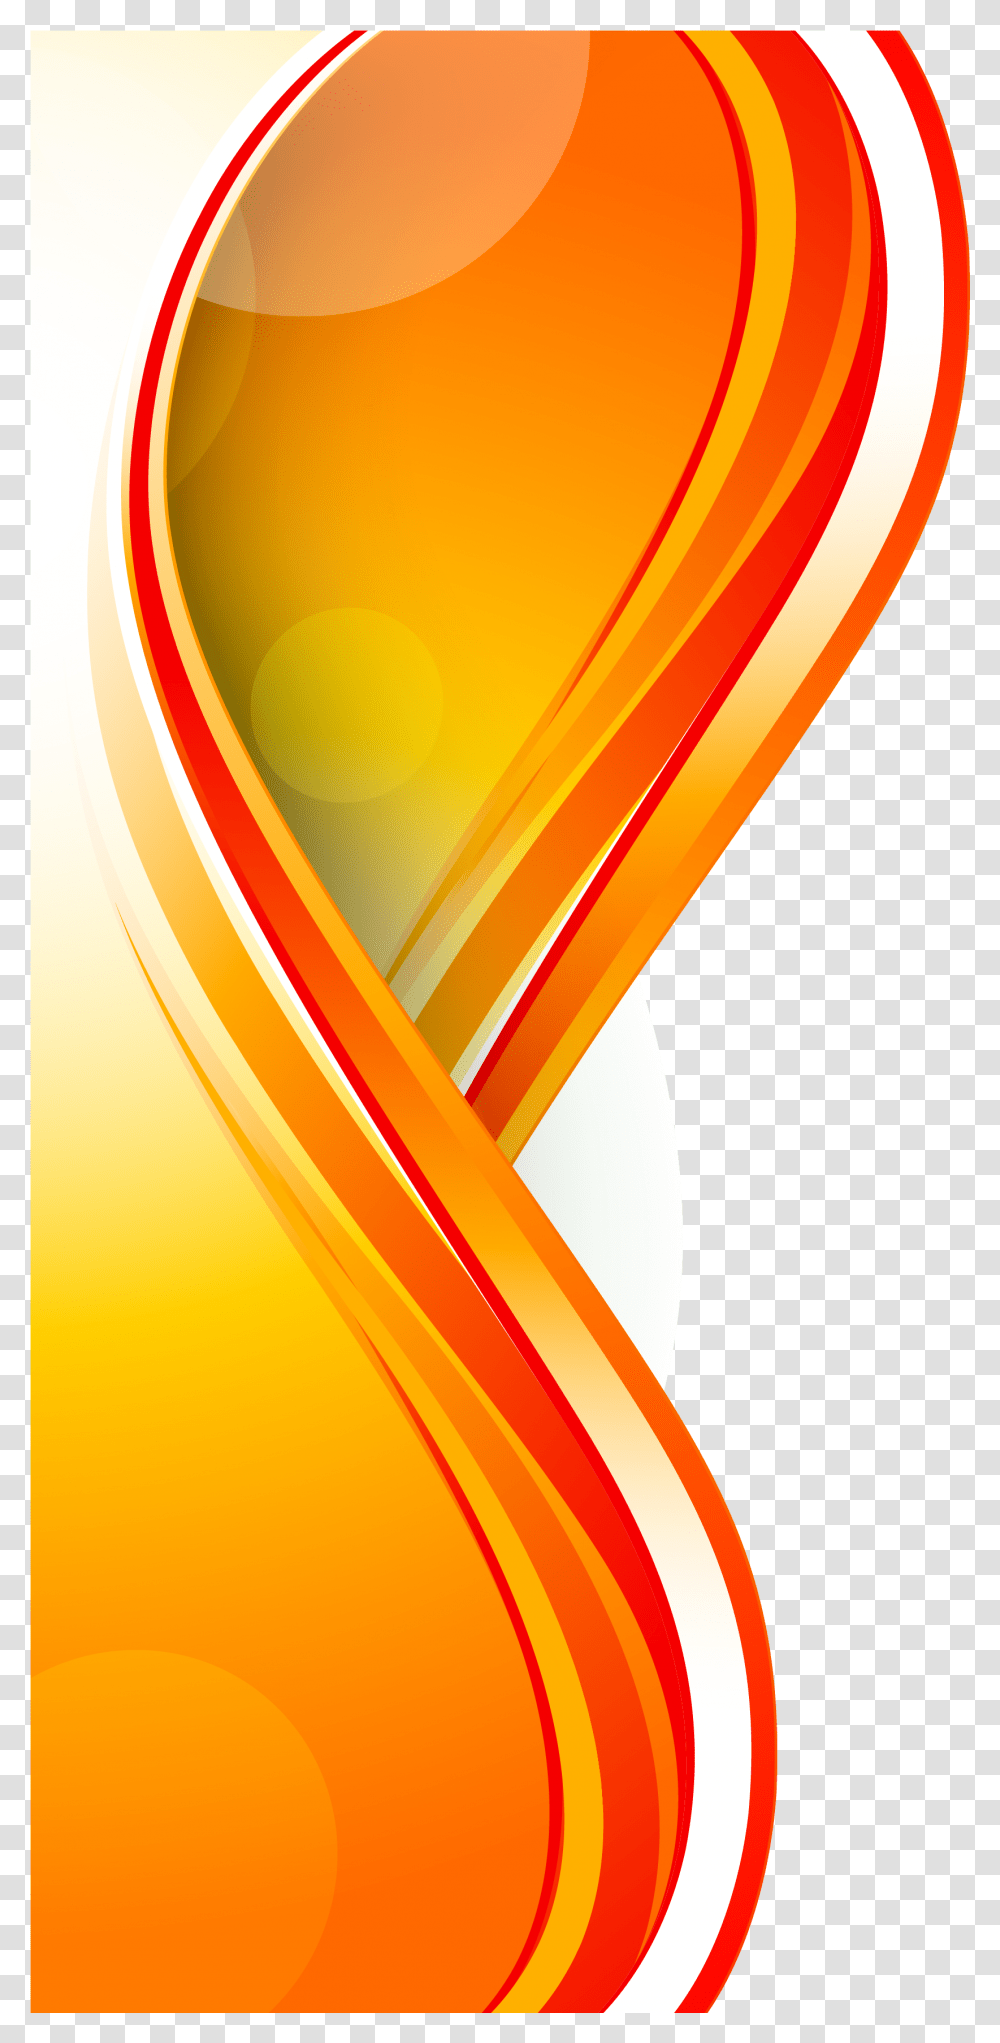 Euclidean Panels Background Transprent Free Download Background Vector Orange, Modern Art, Floral Design Transparent Png